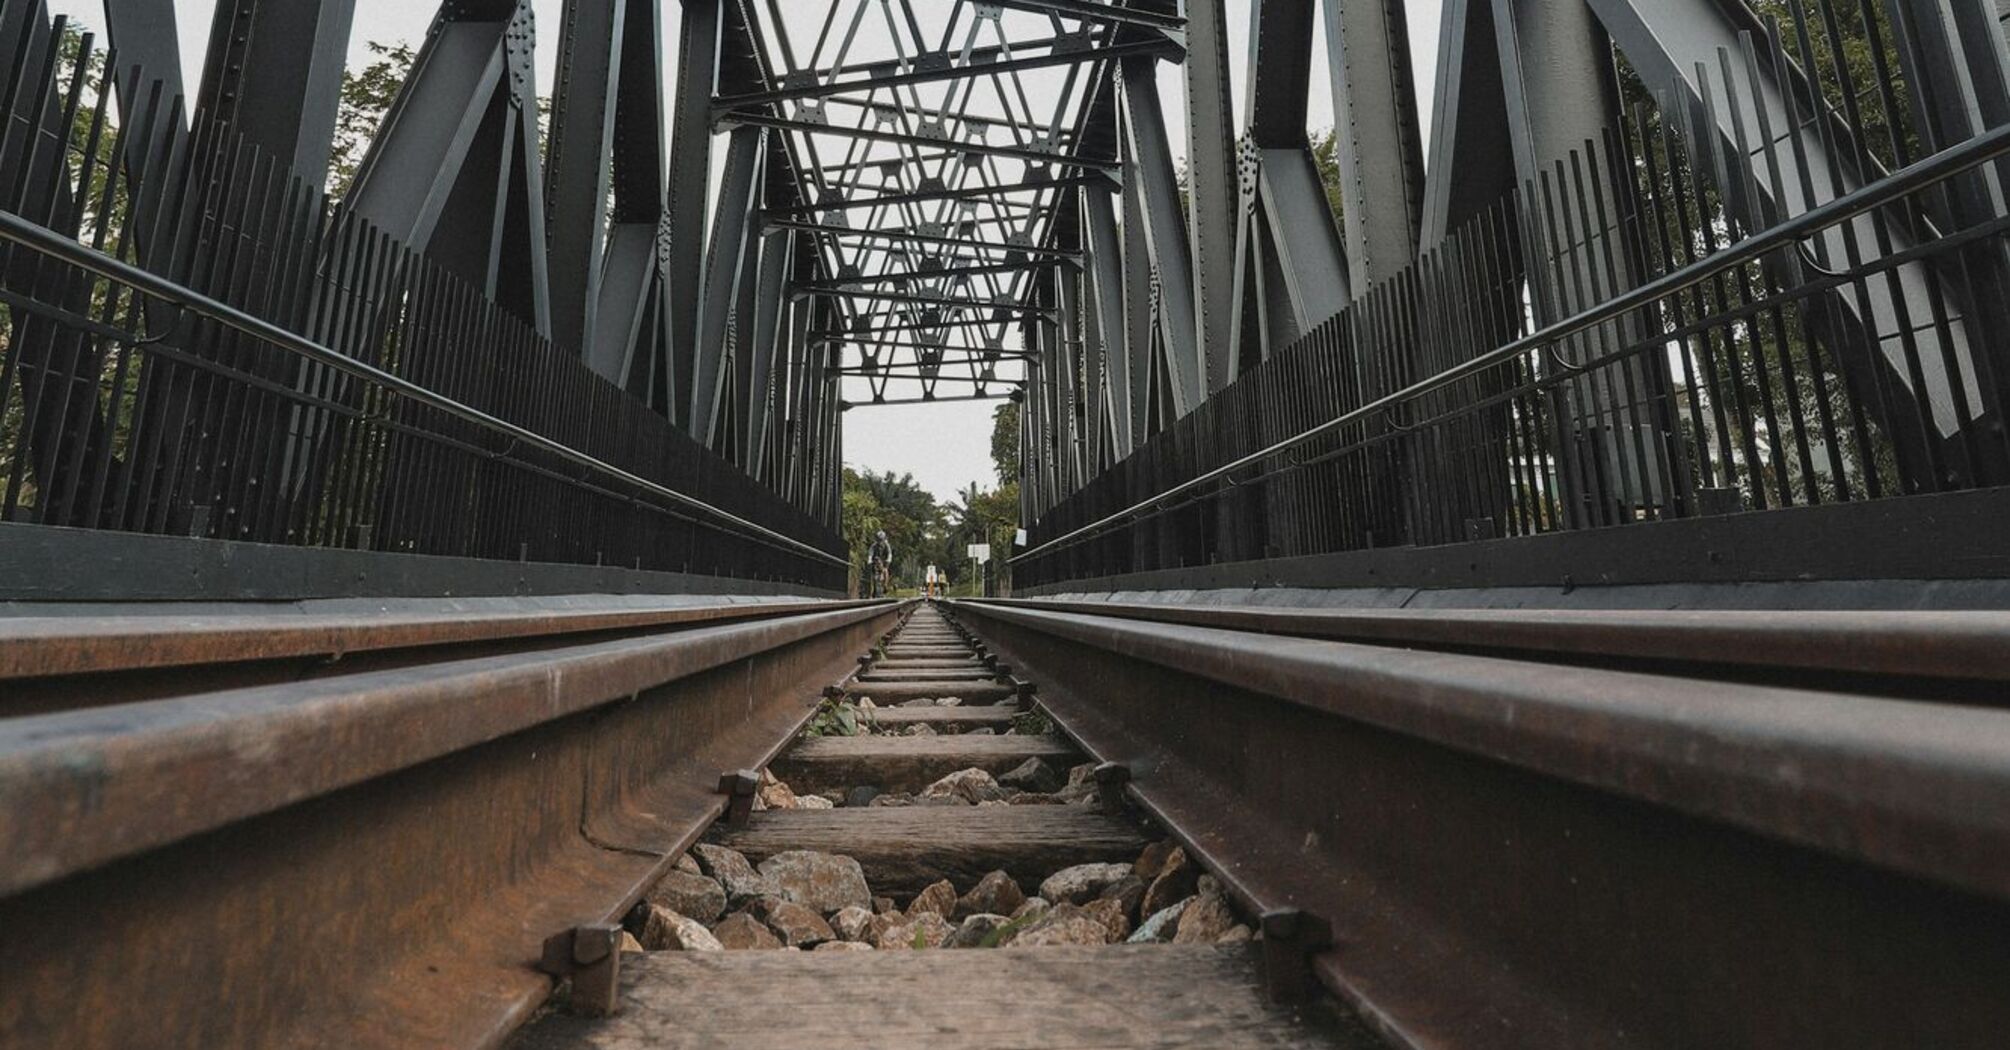 Steel railway bridge viewed from below